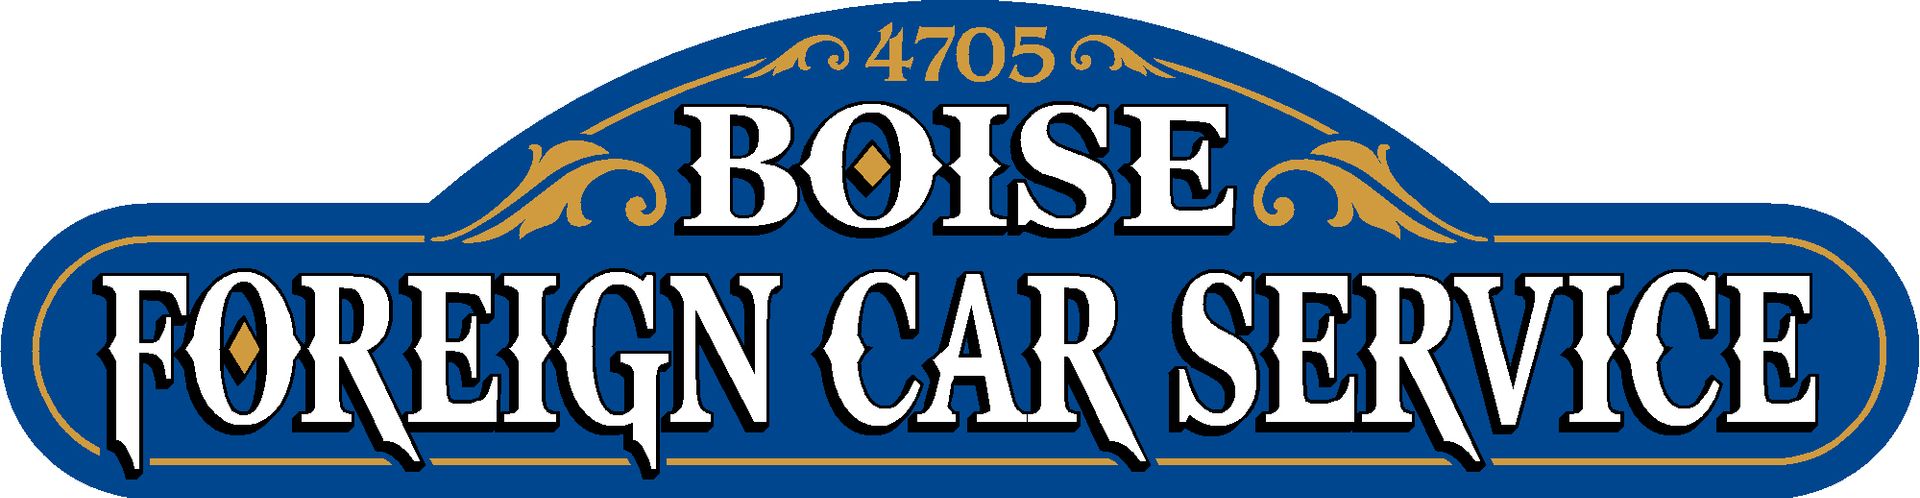 Boise Foreign Car Service Inc.